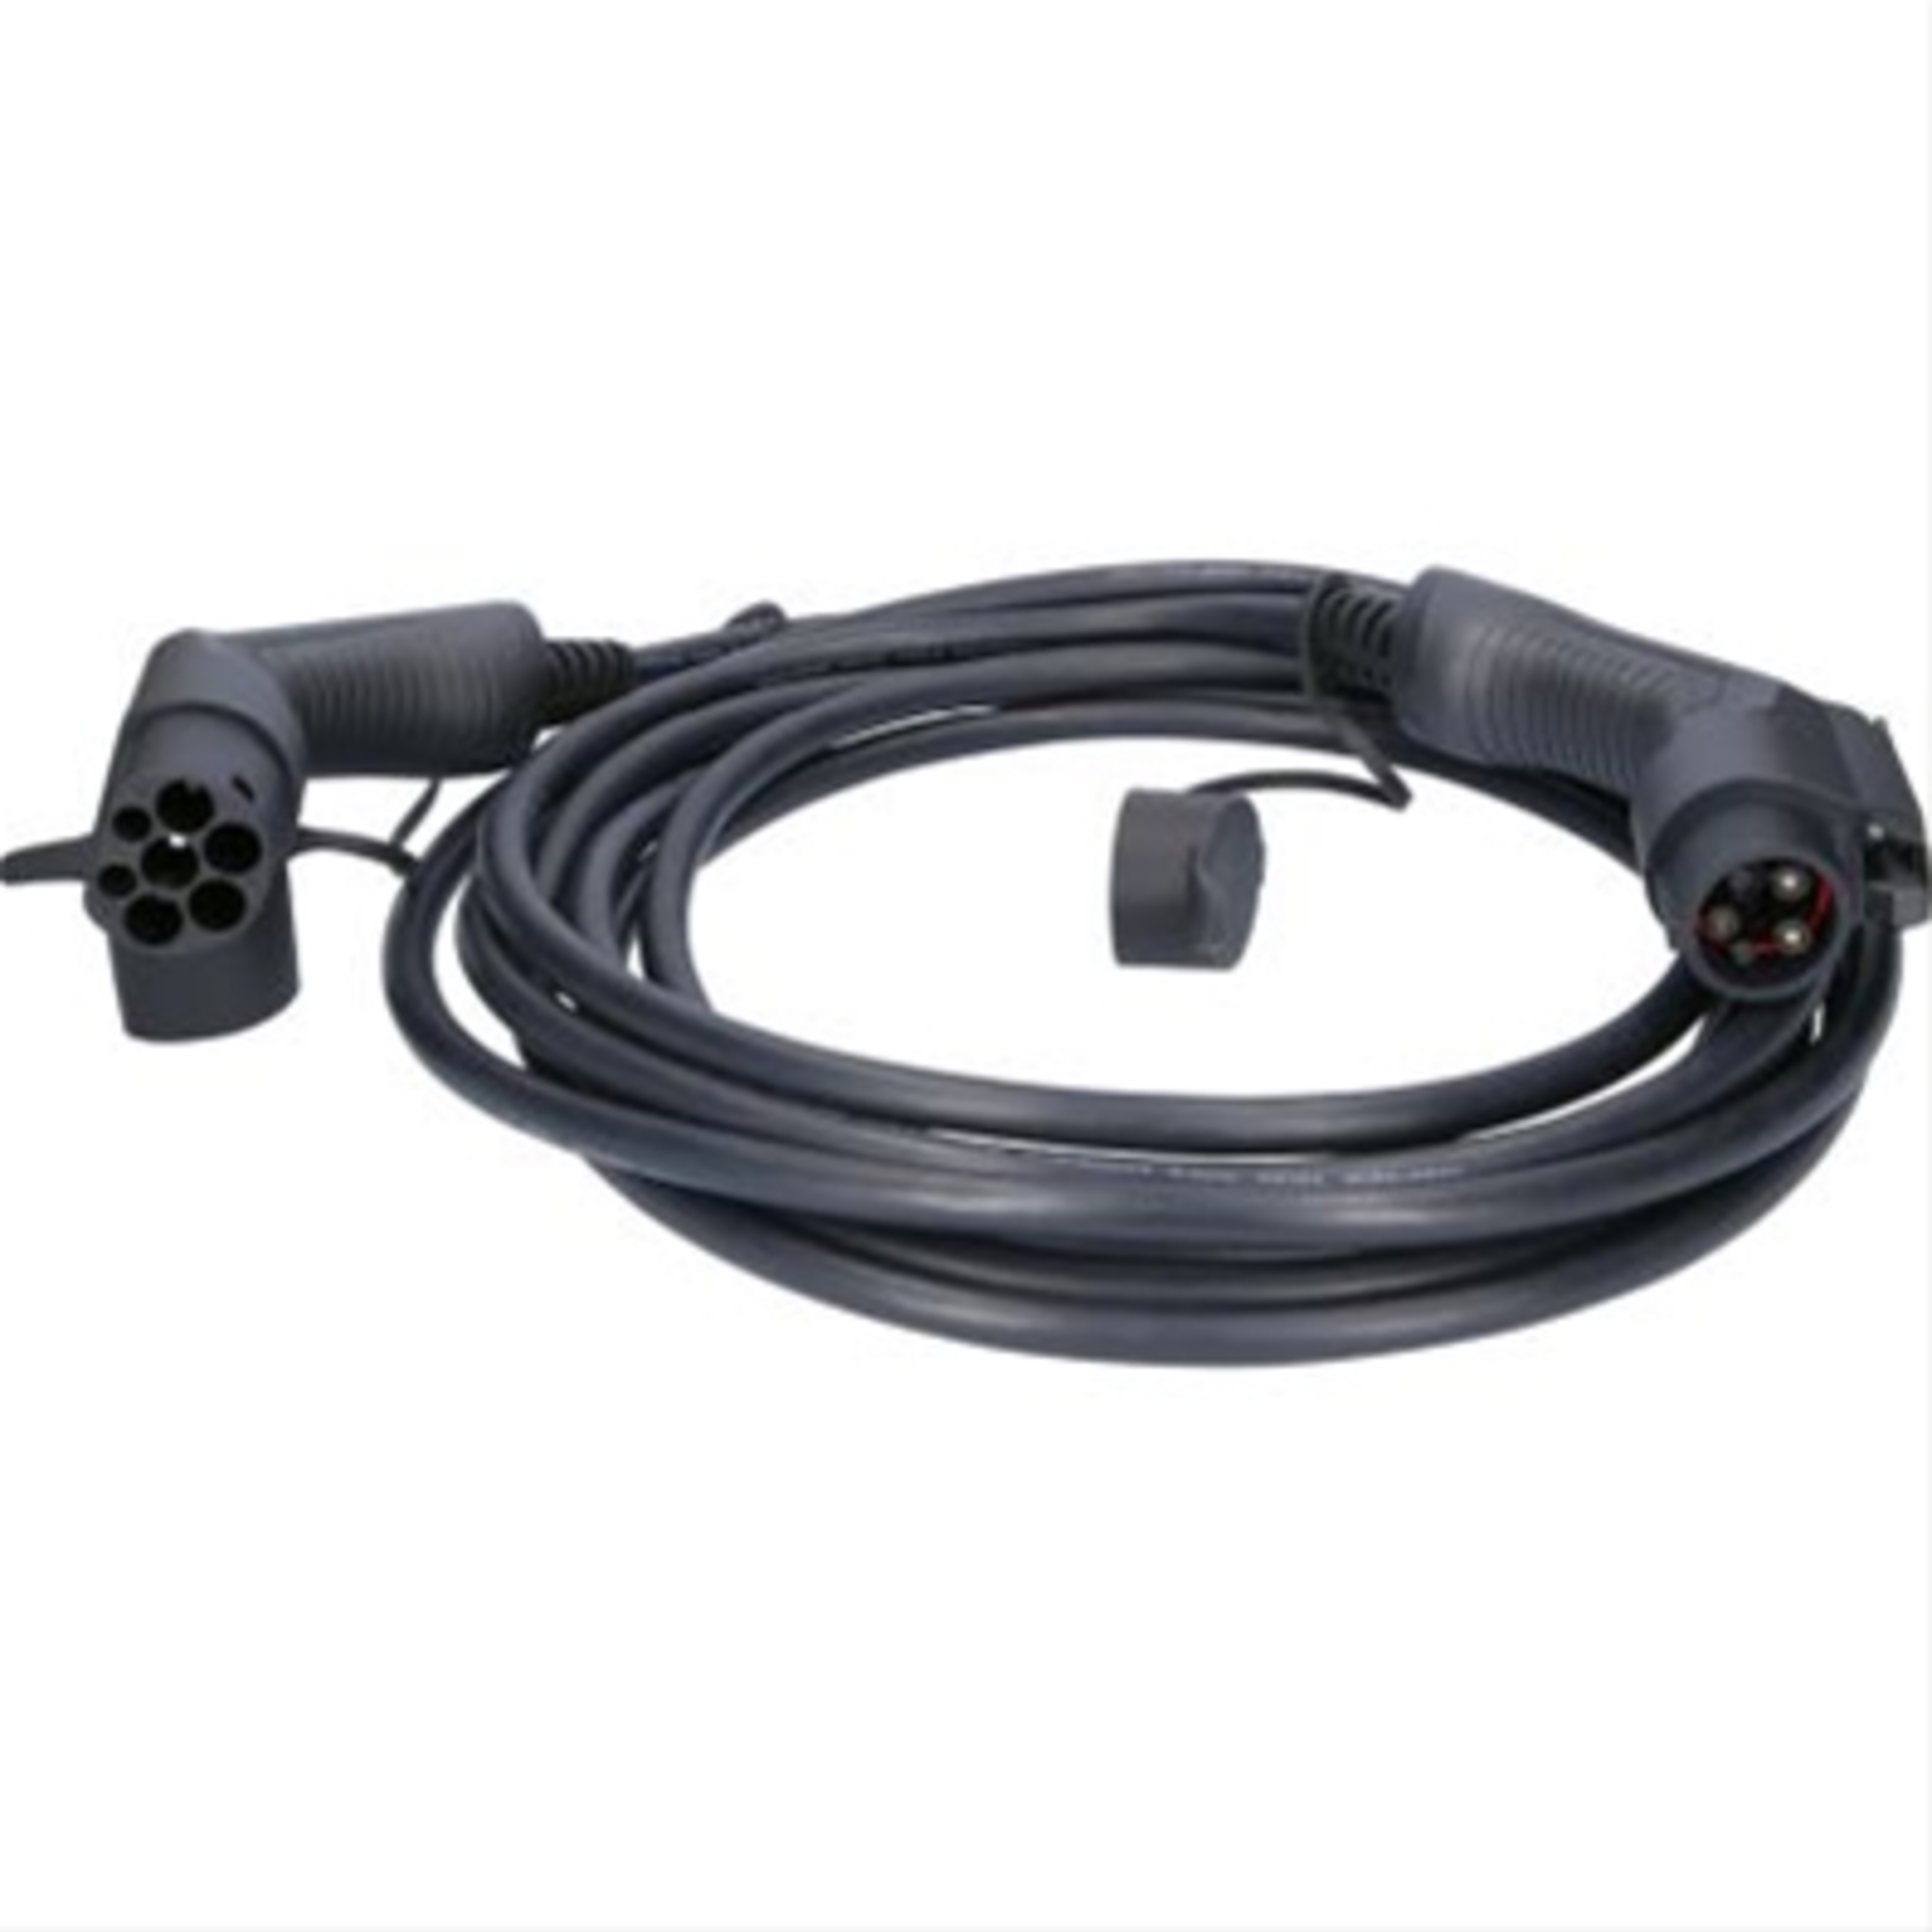 Cablu de incarcare drept typ 2 / typ 1 7.4 kw 230 v 32 a 8m-efuturo ks-tools